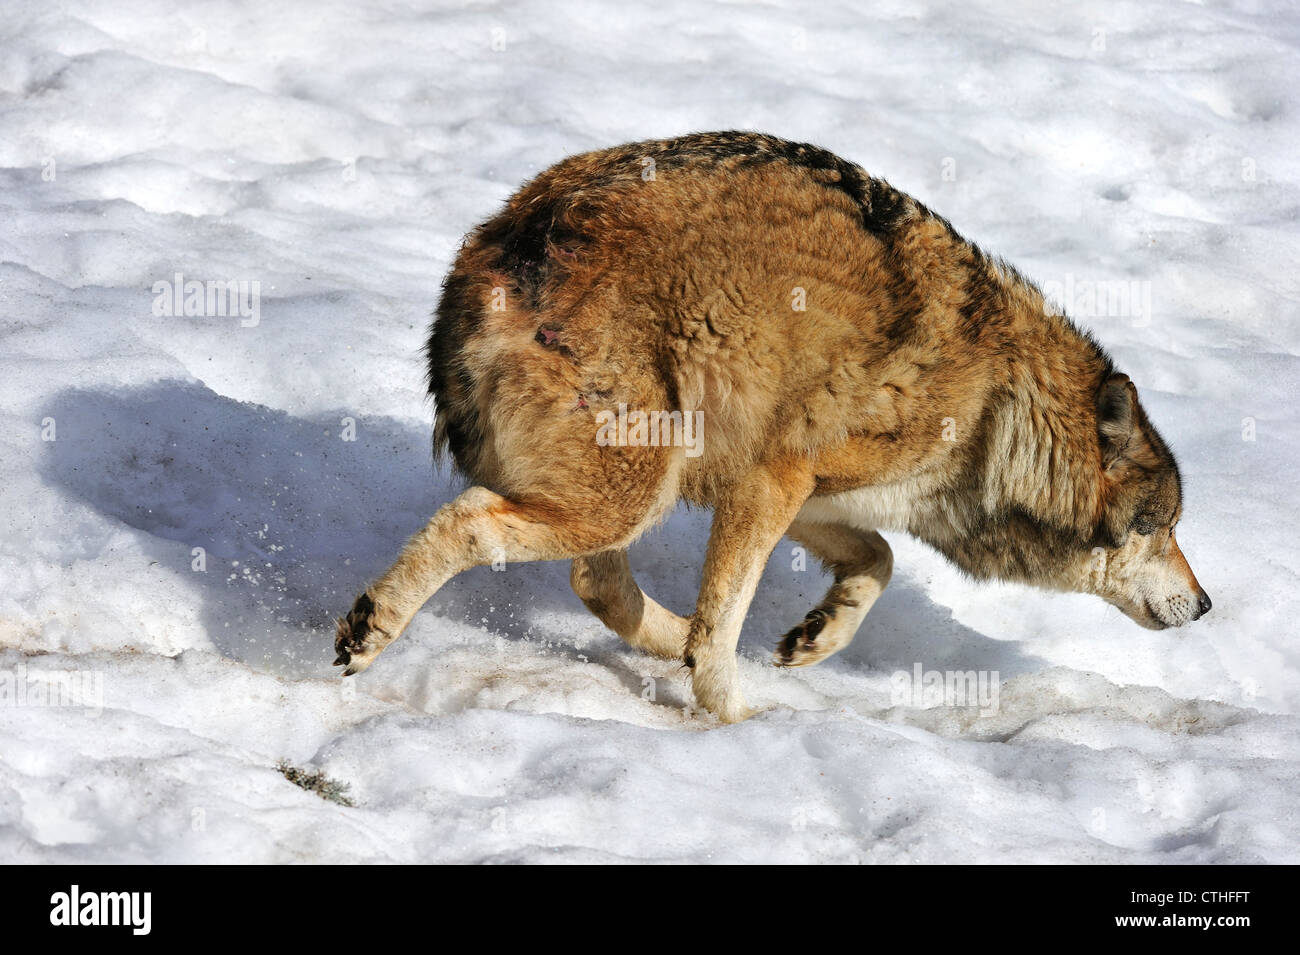 Spaventata subordinare il lupo in esecuzione fuori nella neve, mostrando sottomesso la postura da tenere orecchie piatte e coda nascosto tra le gambe Foto Stock